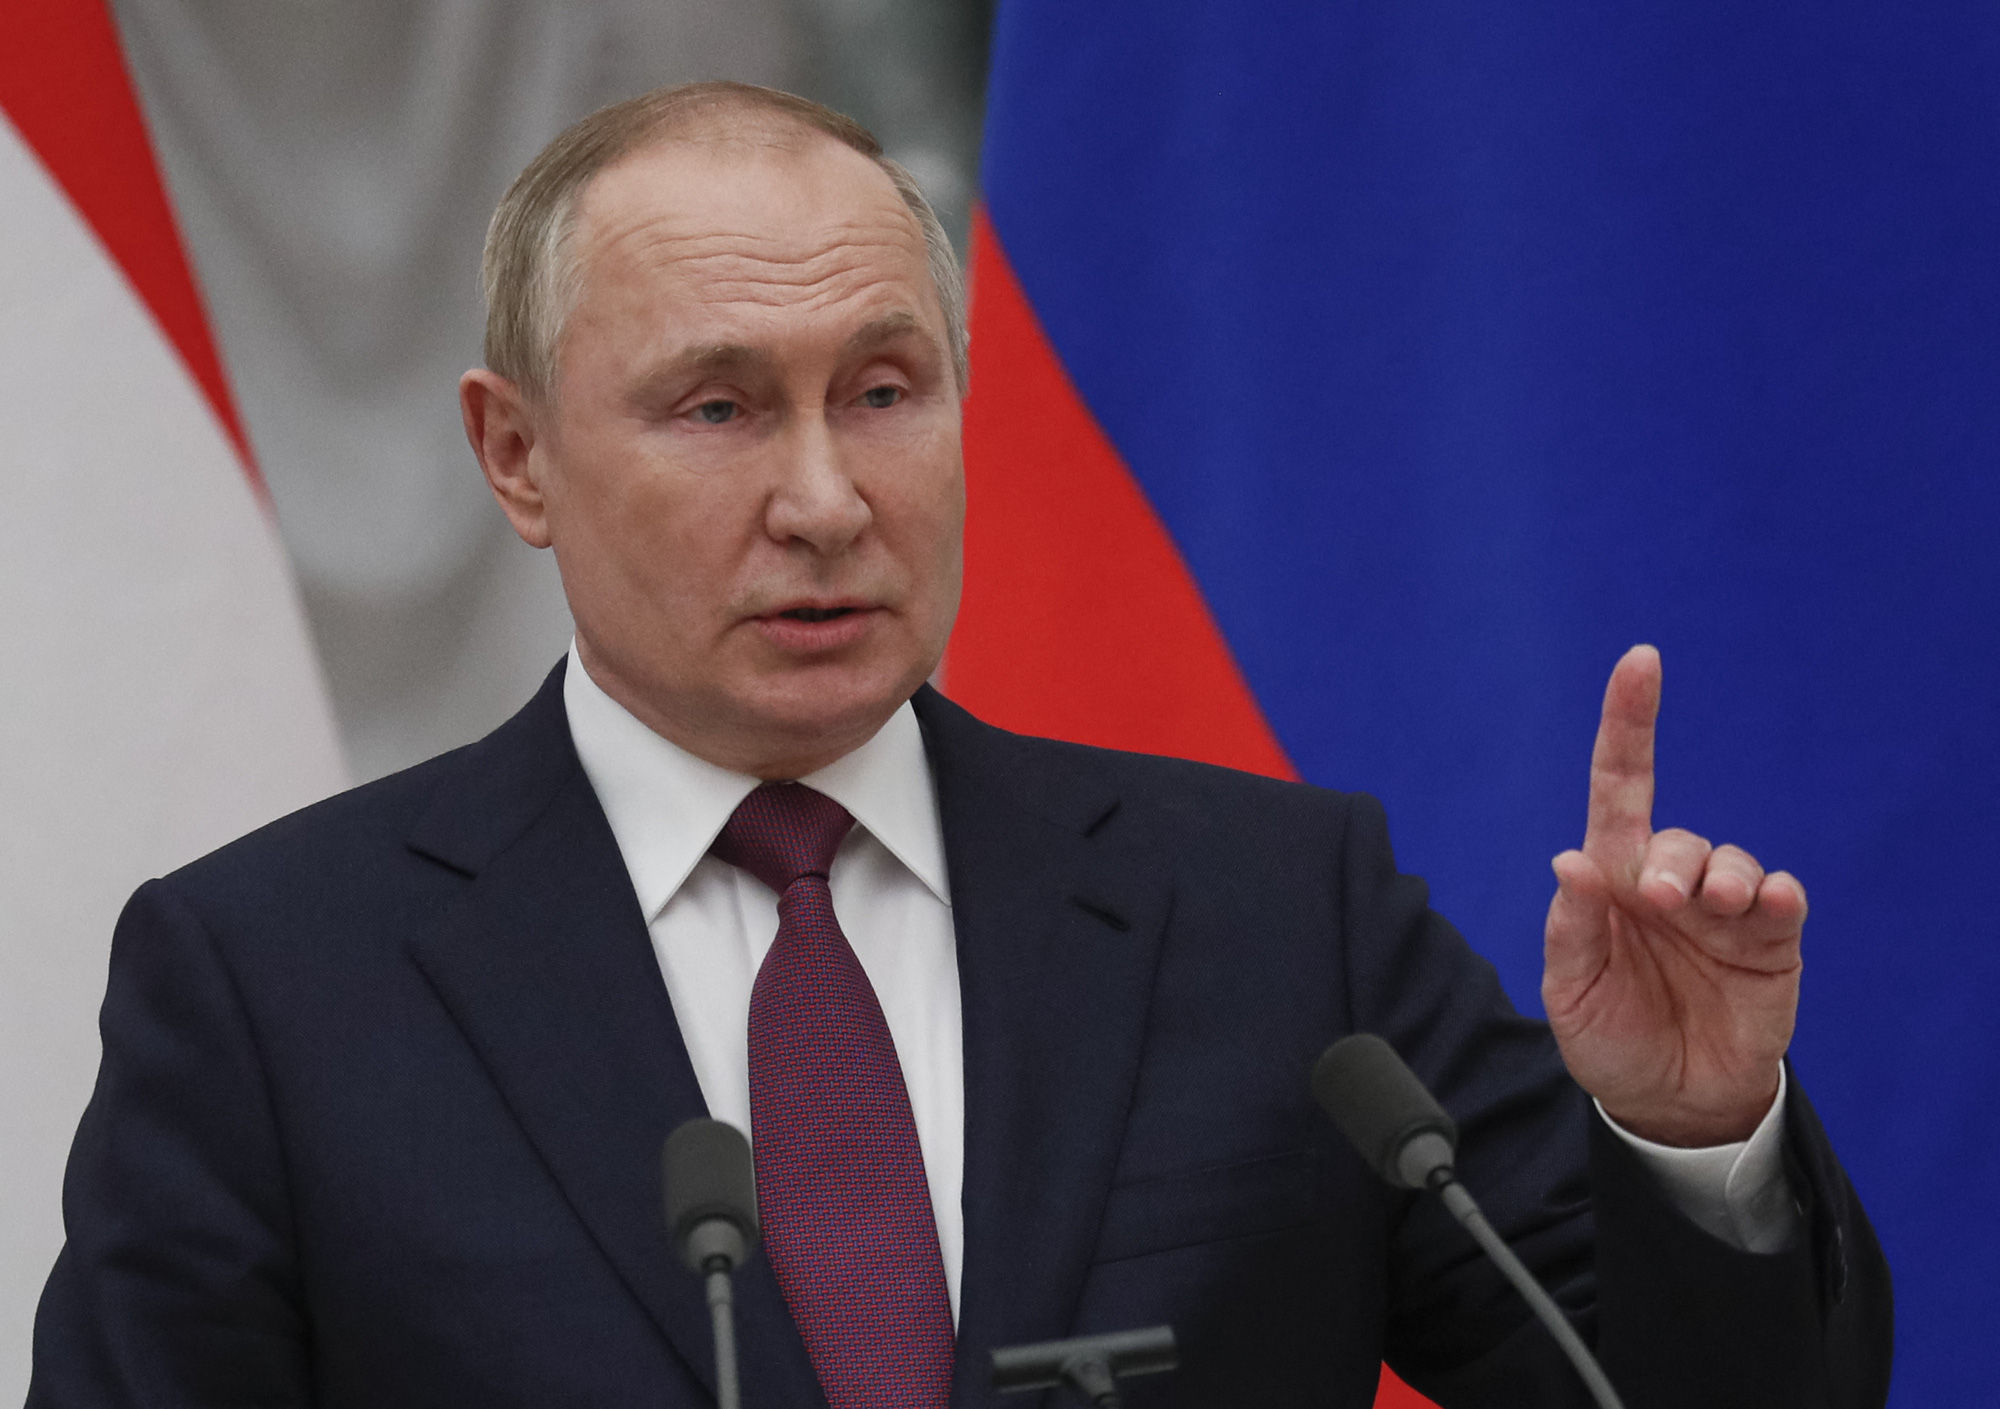 Tổng thống Putin từ chối đảm bảo an ninh cho Ukraine vì vấn đề Crimea, Donbass chưa được giải quyết - Ảnh 1.